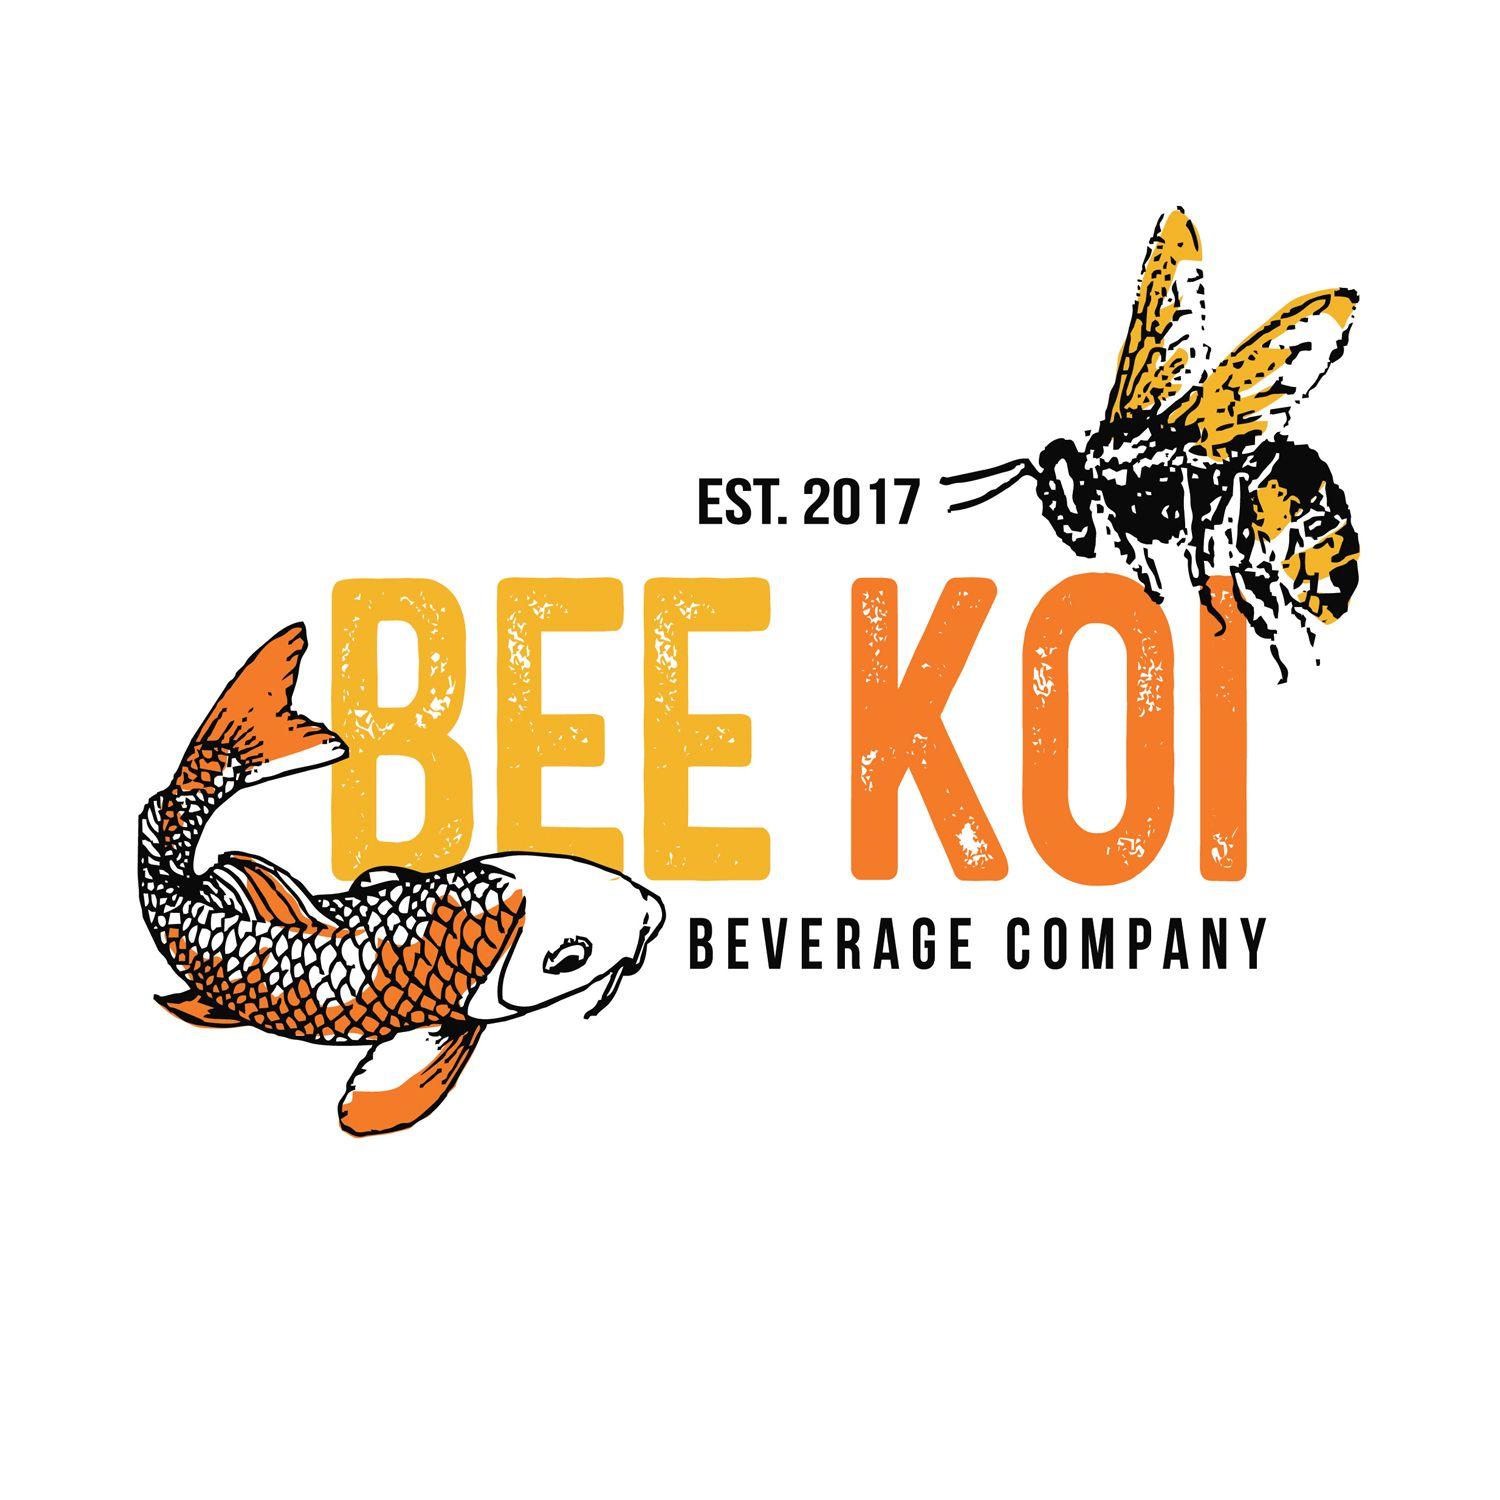 Beverage Manufacturer Logo - Upmarket, Bold, It Company Logo Design for Bee Koi Beverage Company ...